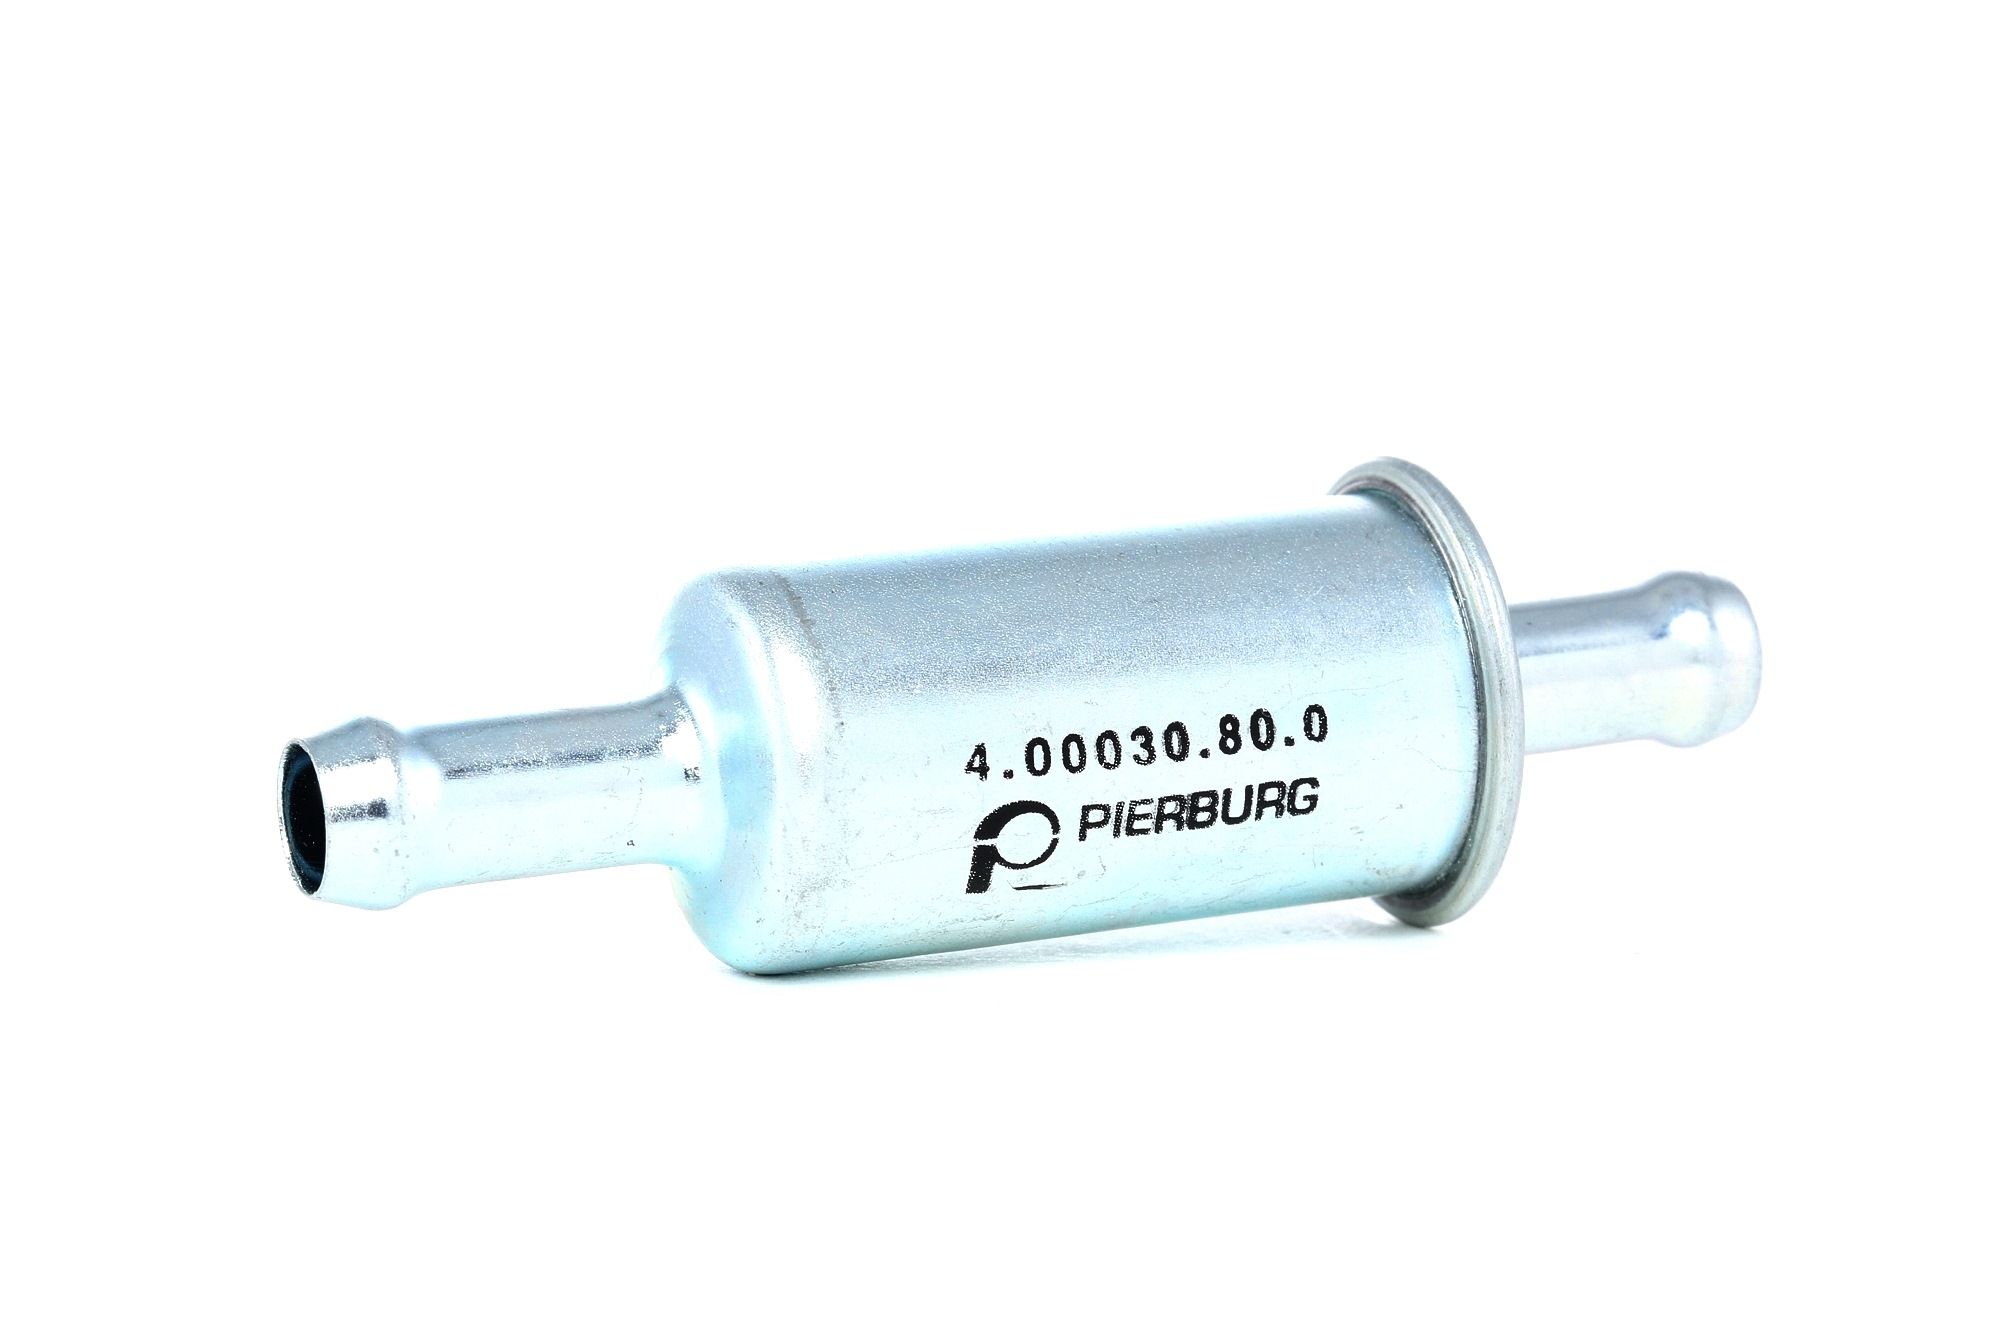 PIERBURG 4.00030.80.0 originální PORSCHE Palivový filtr Filtr zabudovaný do potrubí, 8mm